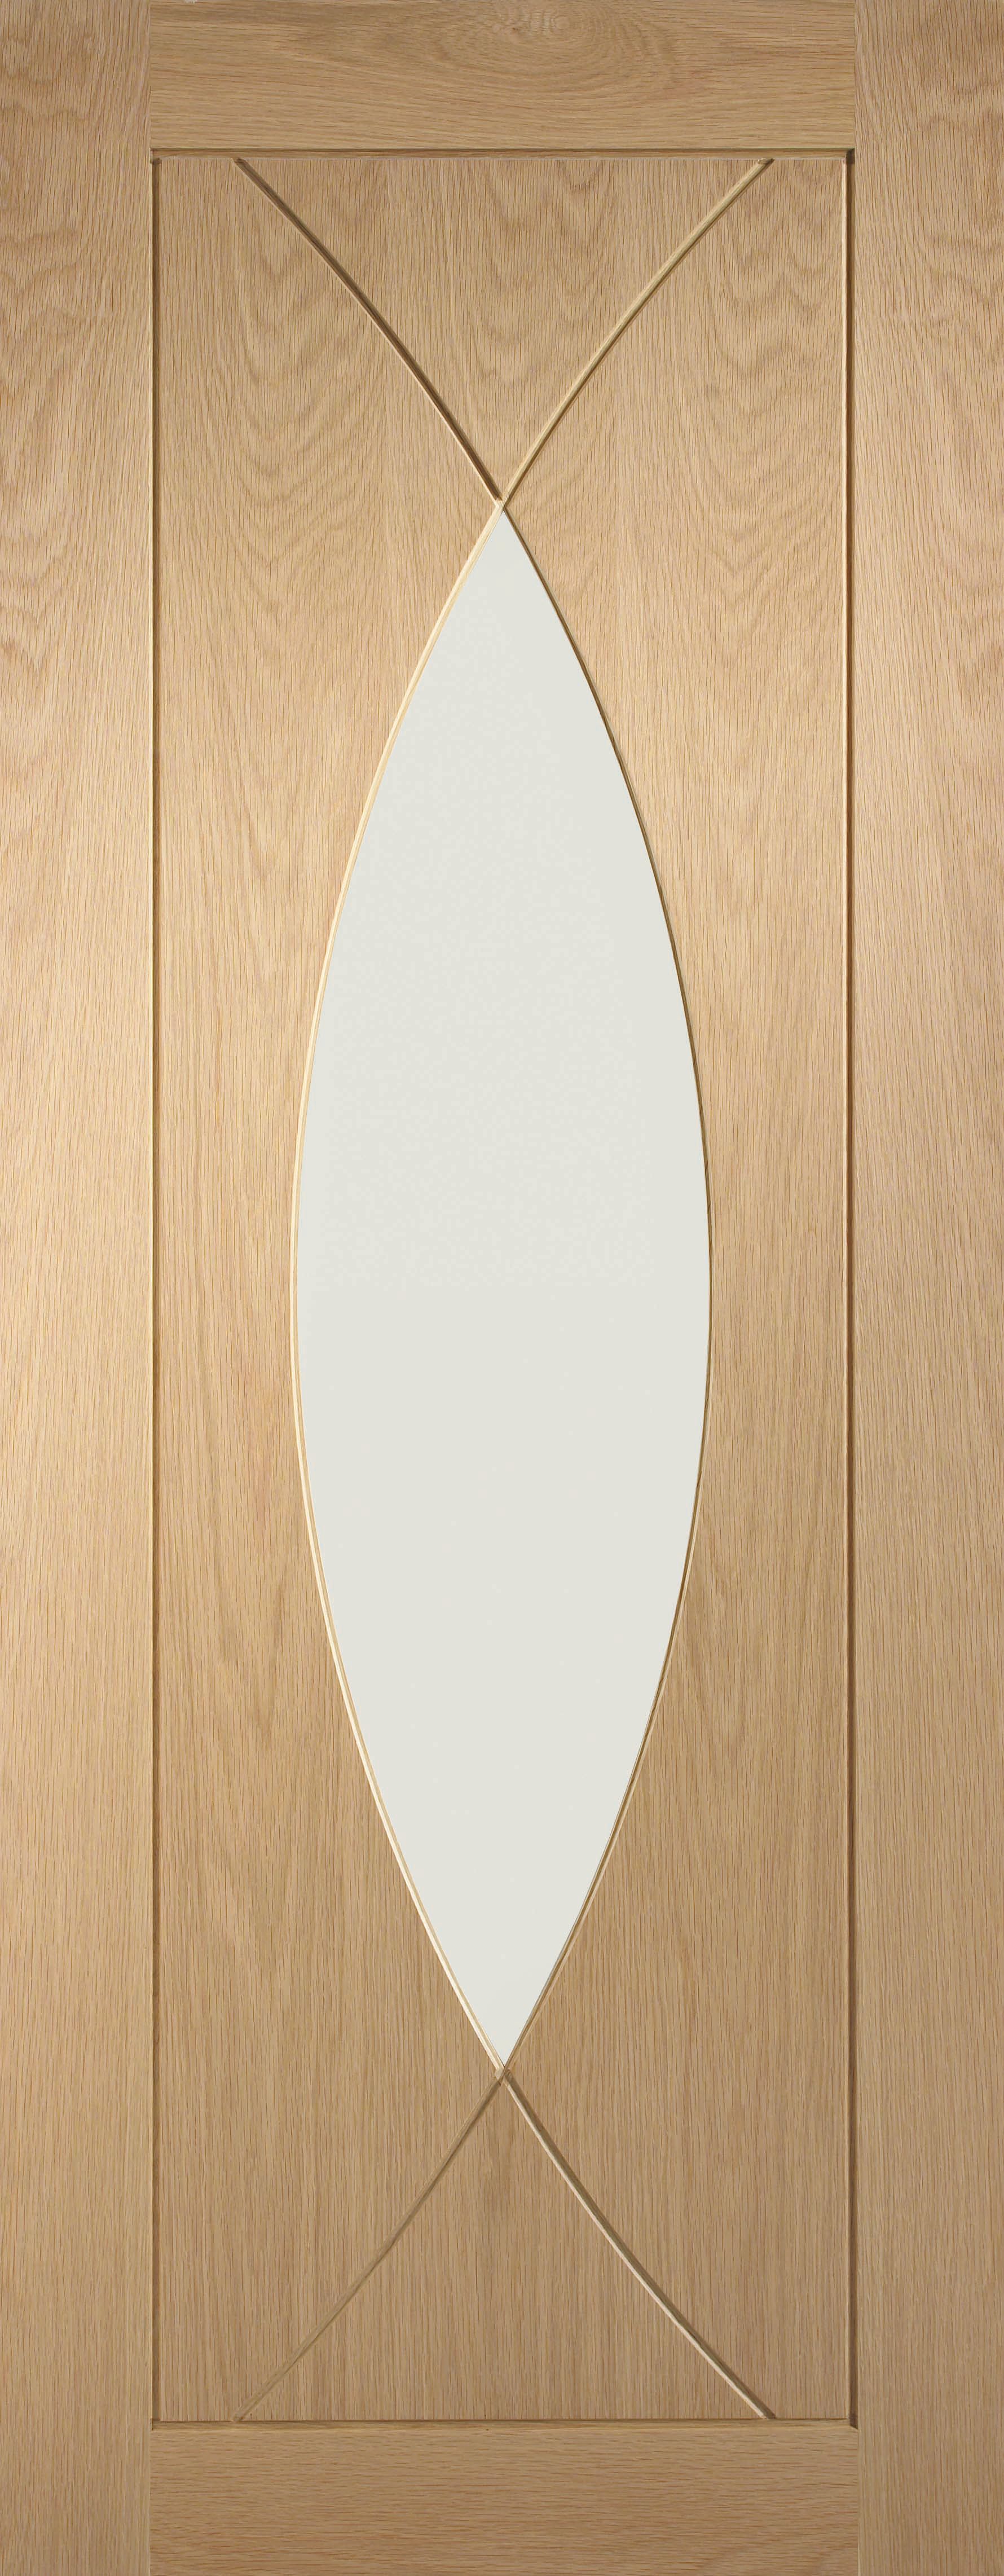 Image of XL Joinery Pesaro Glazed Oak Patterned Internal Door - 1981 x 838mm